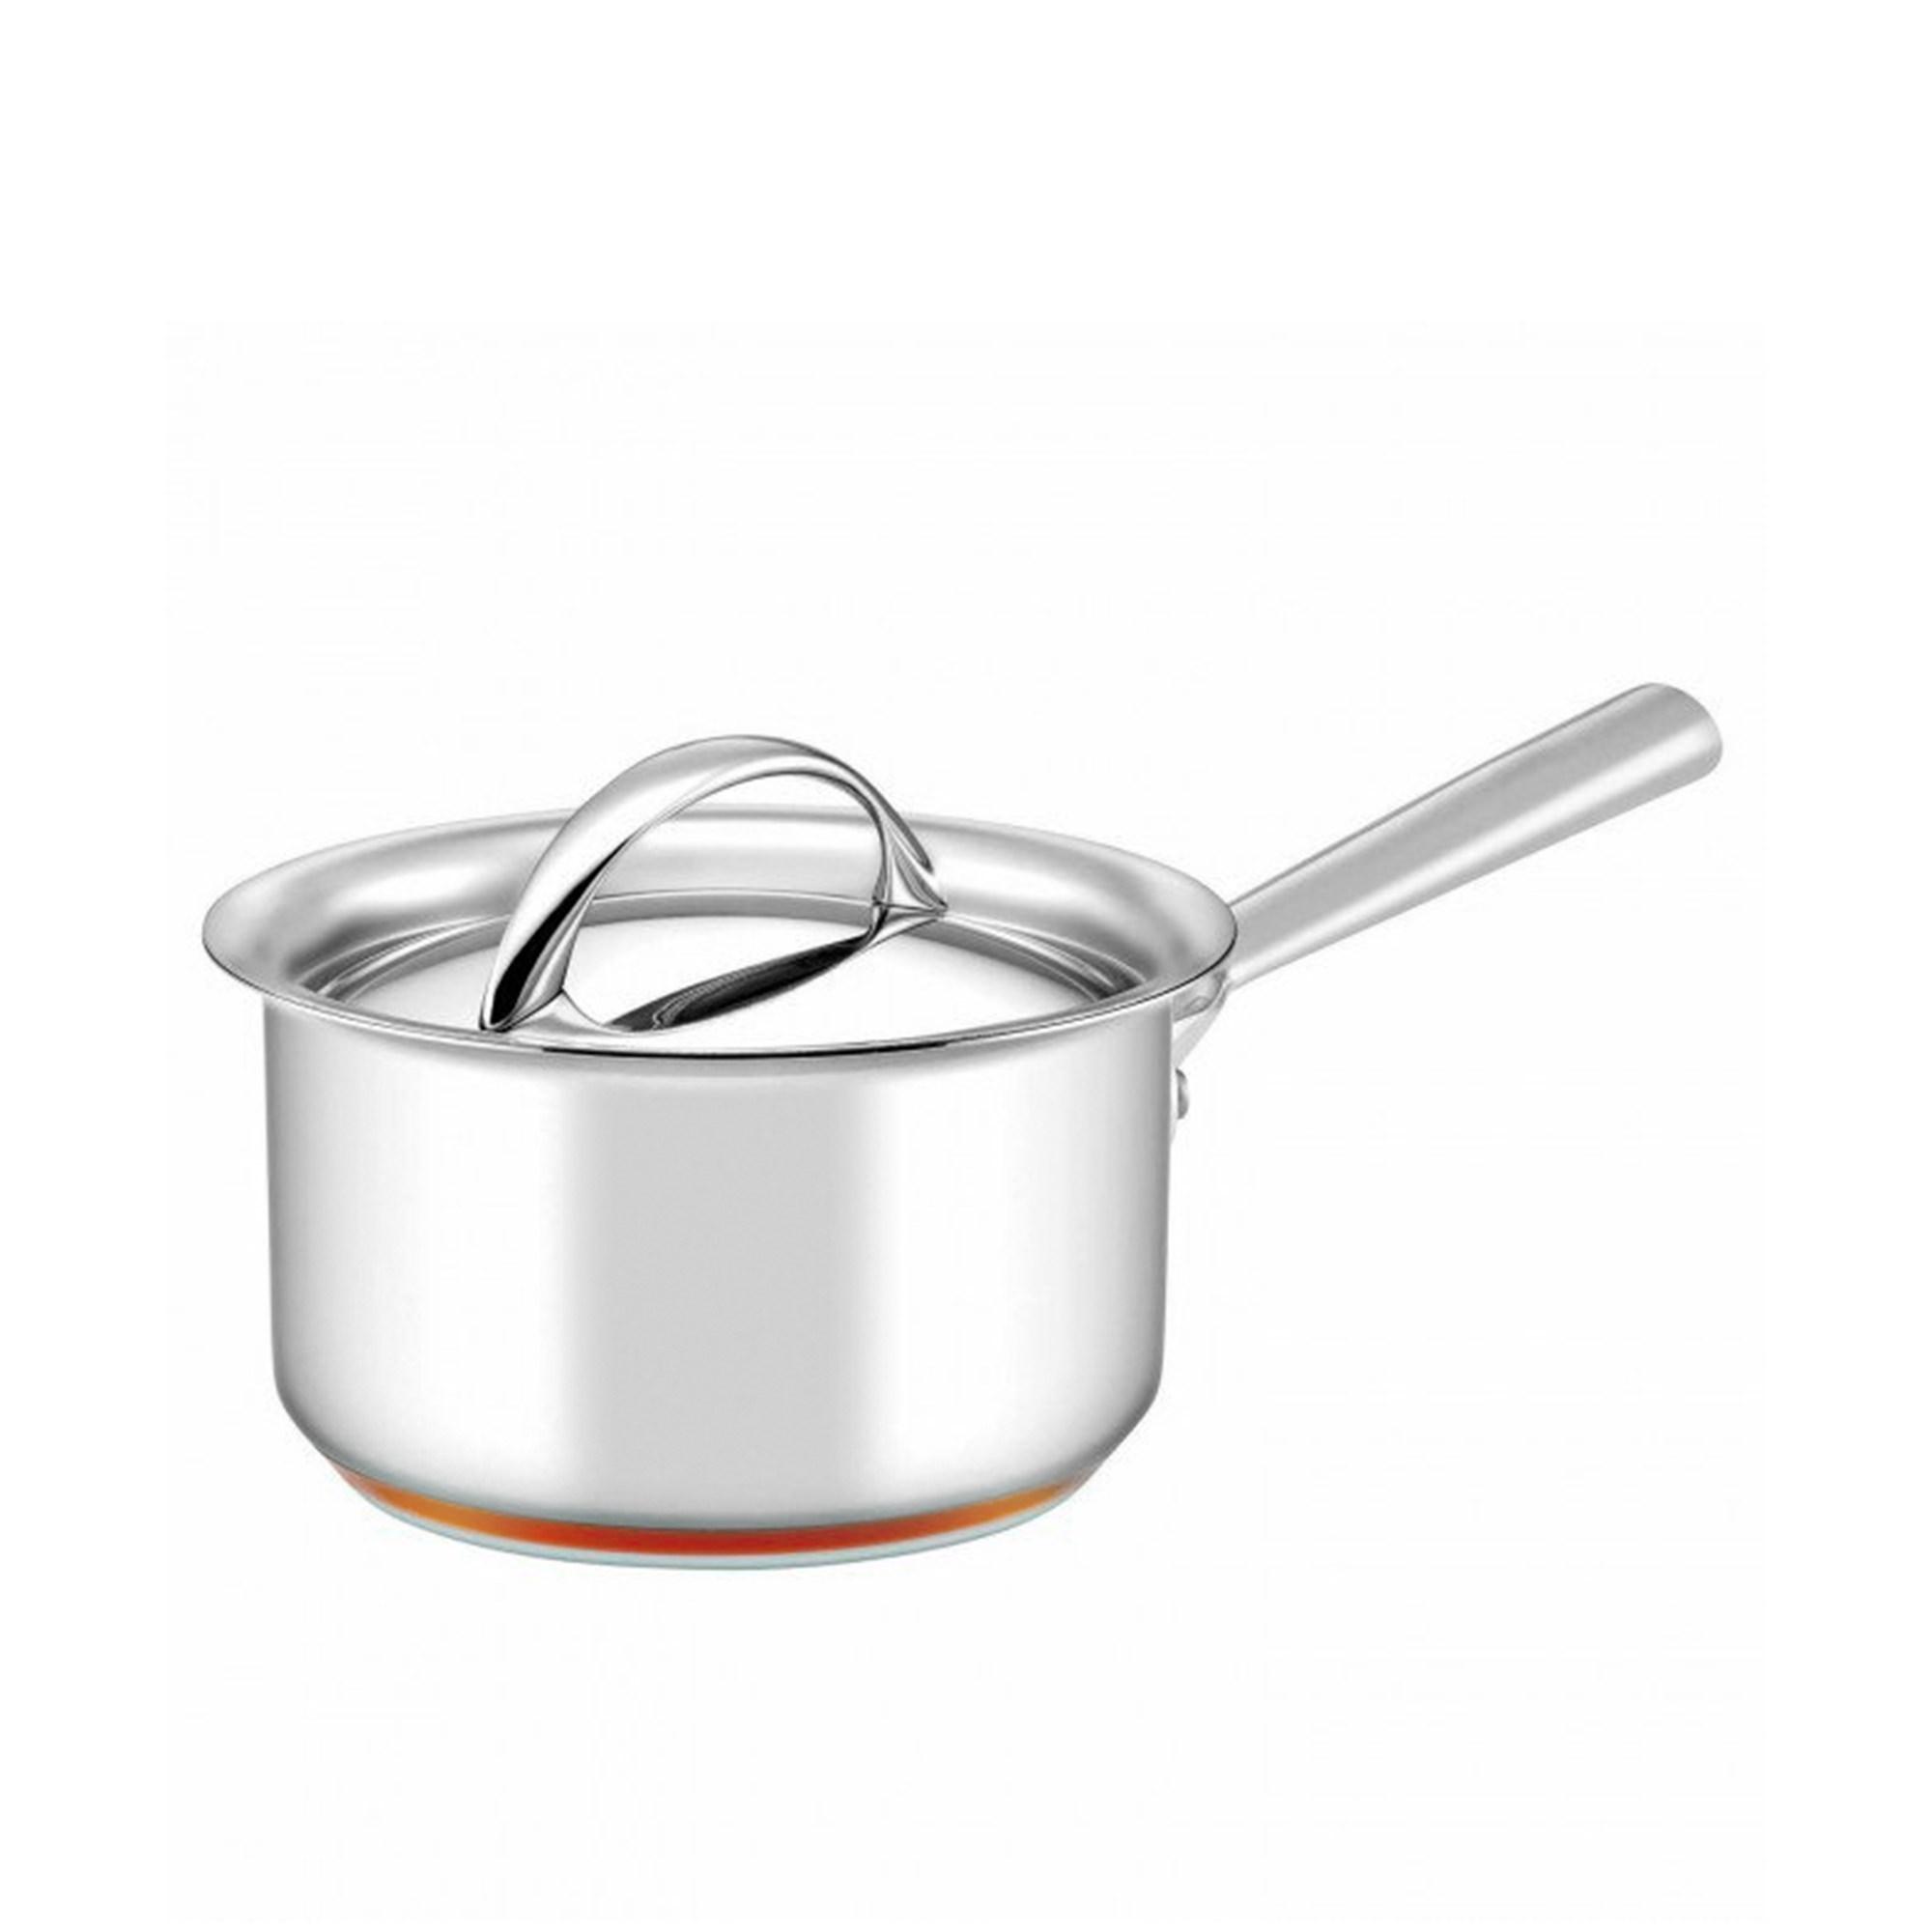 Essteele Per Vita 3pc Stainless Steel Cookware Set Image 5